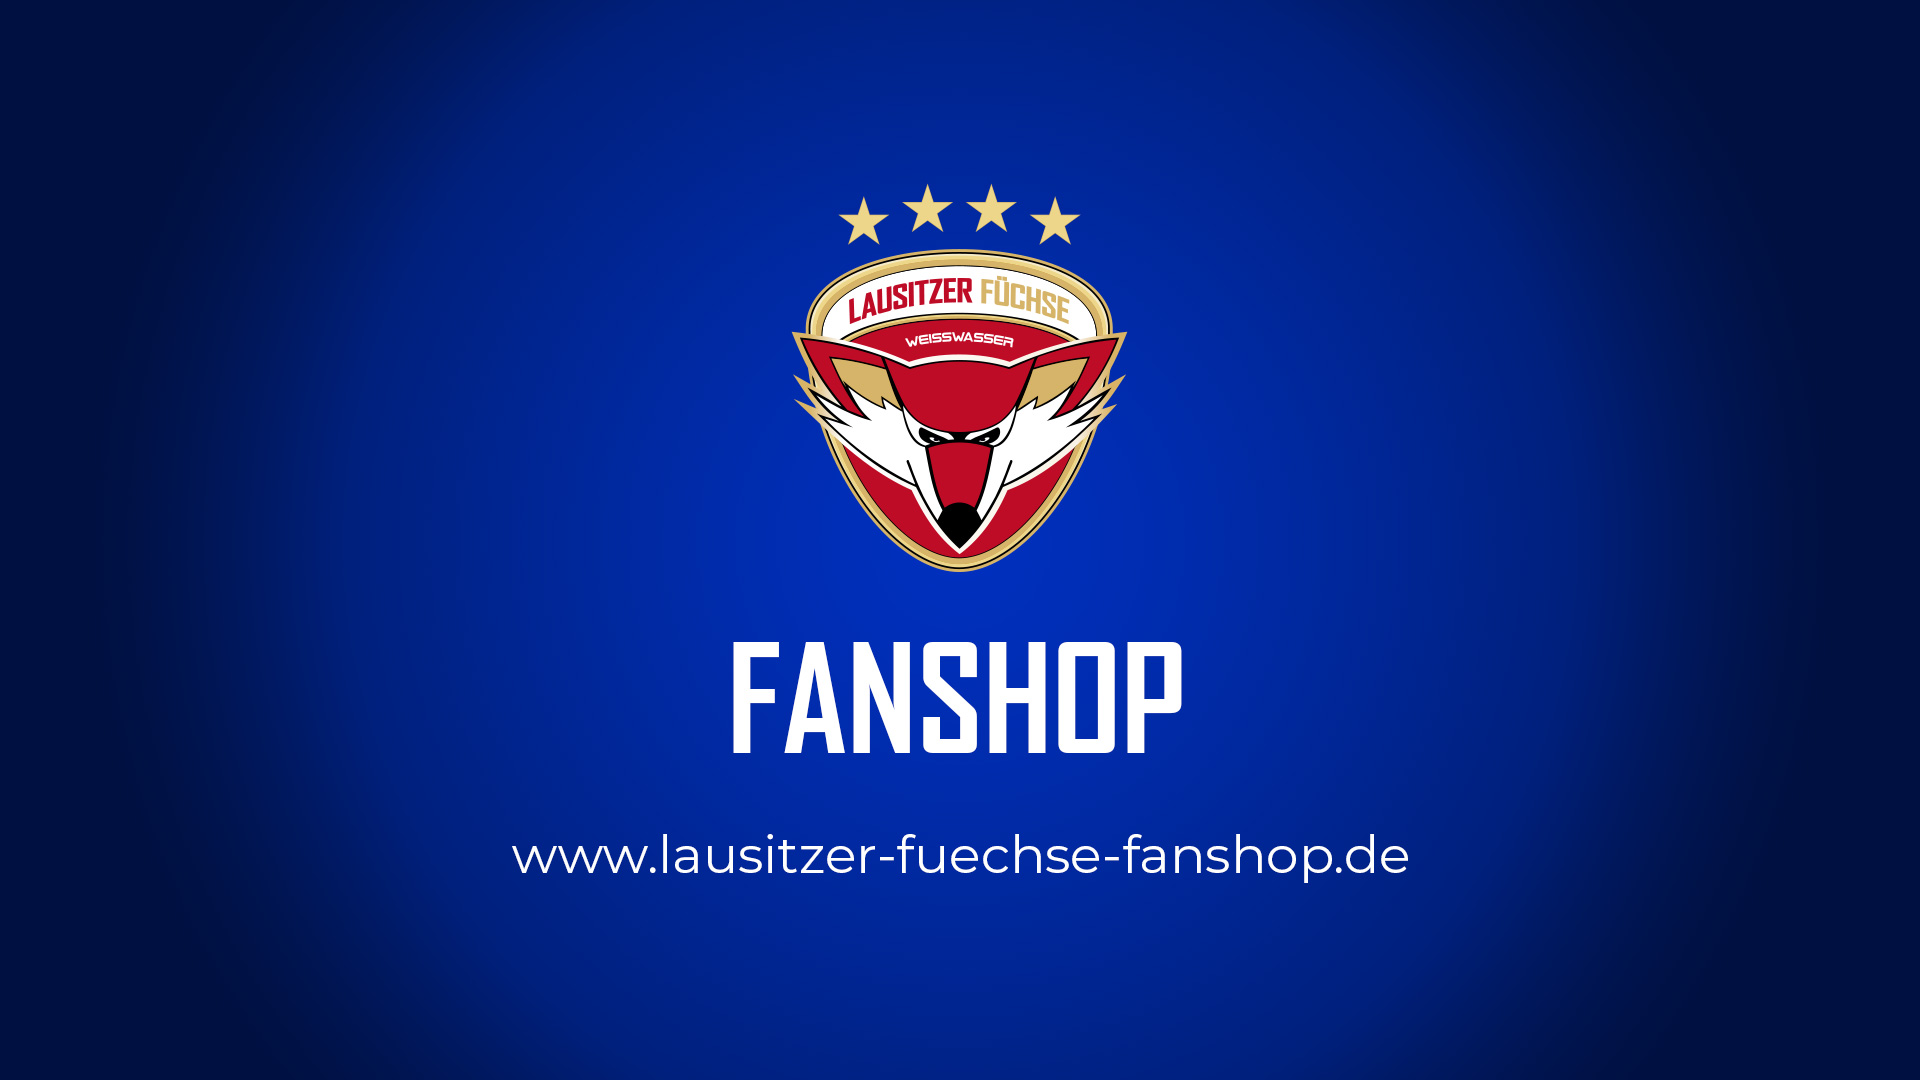 (c) Lausitzer-fuechse-fanshop.de